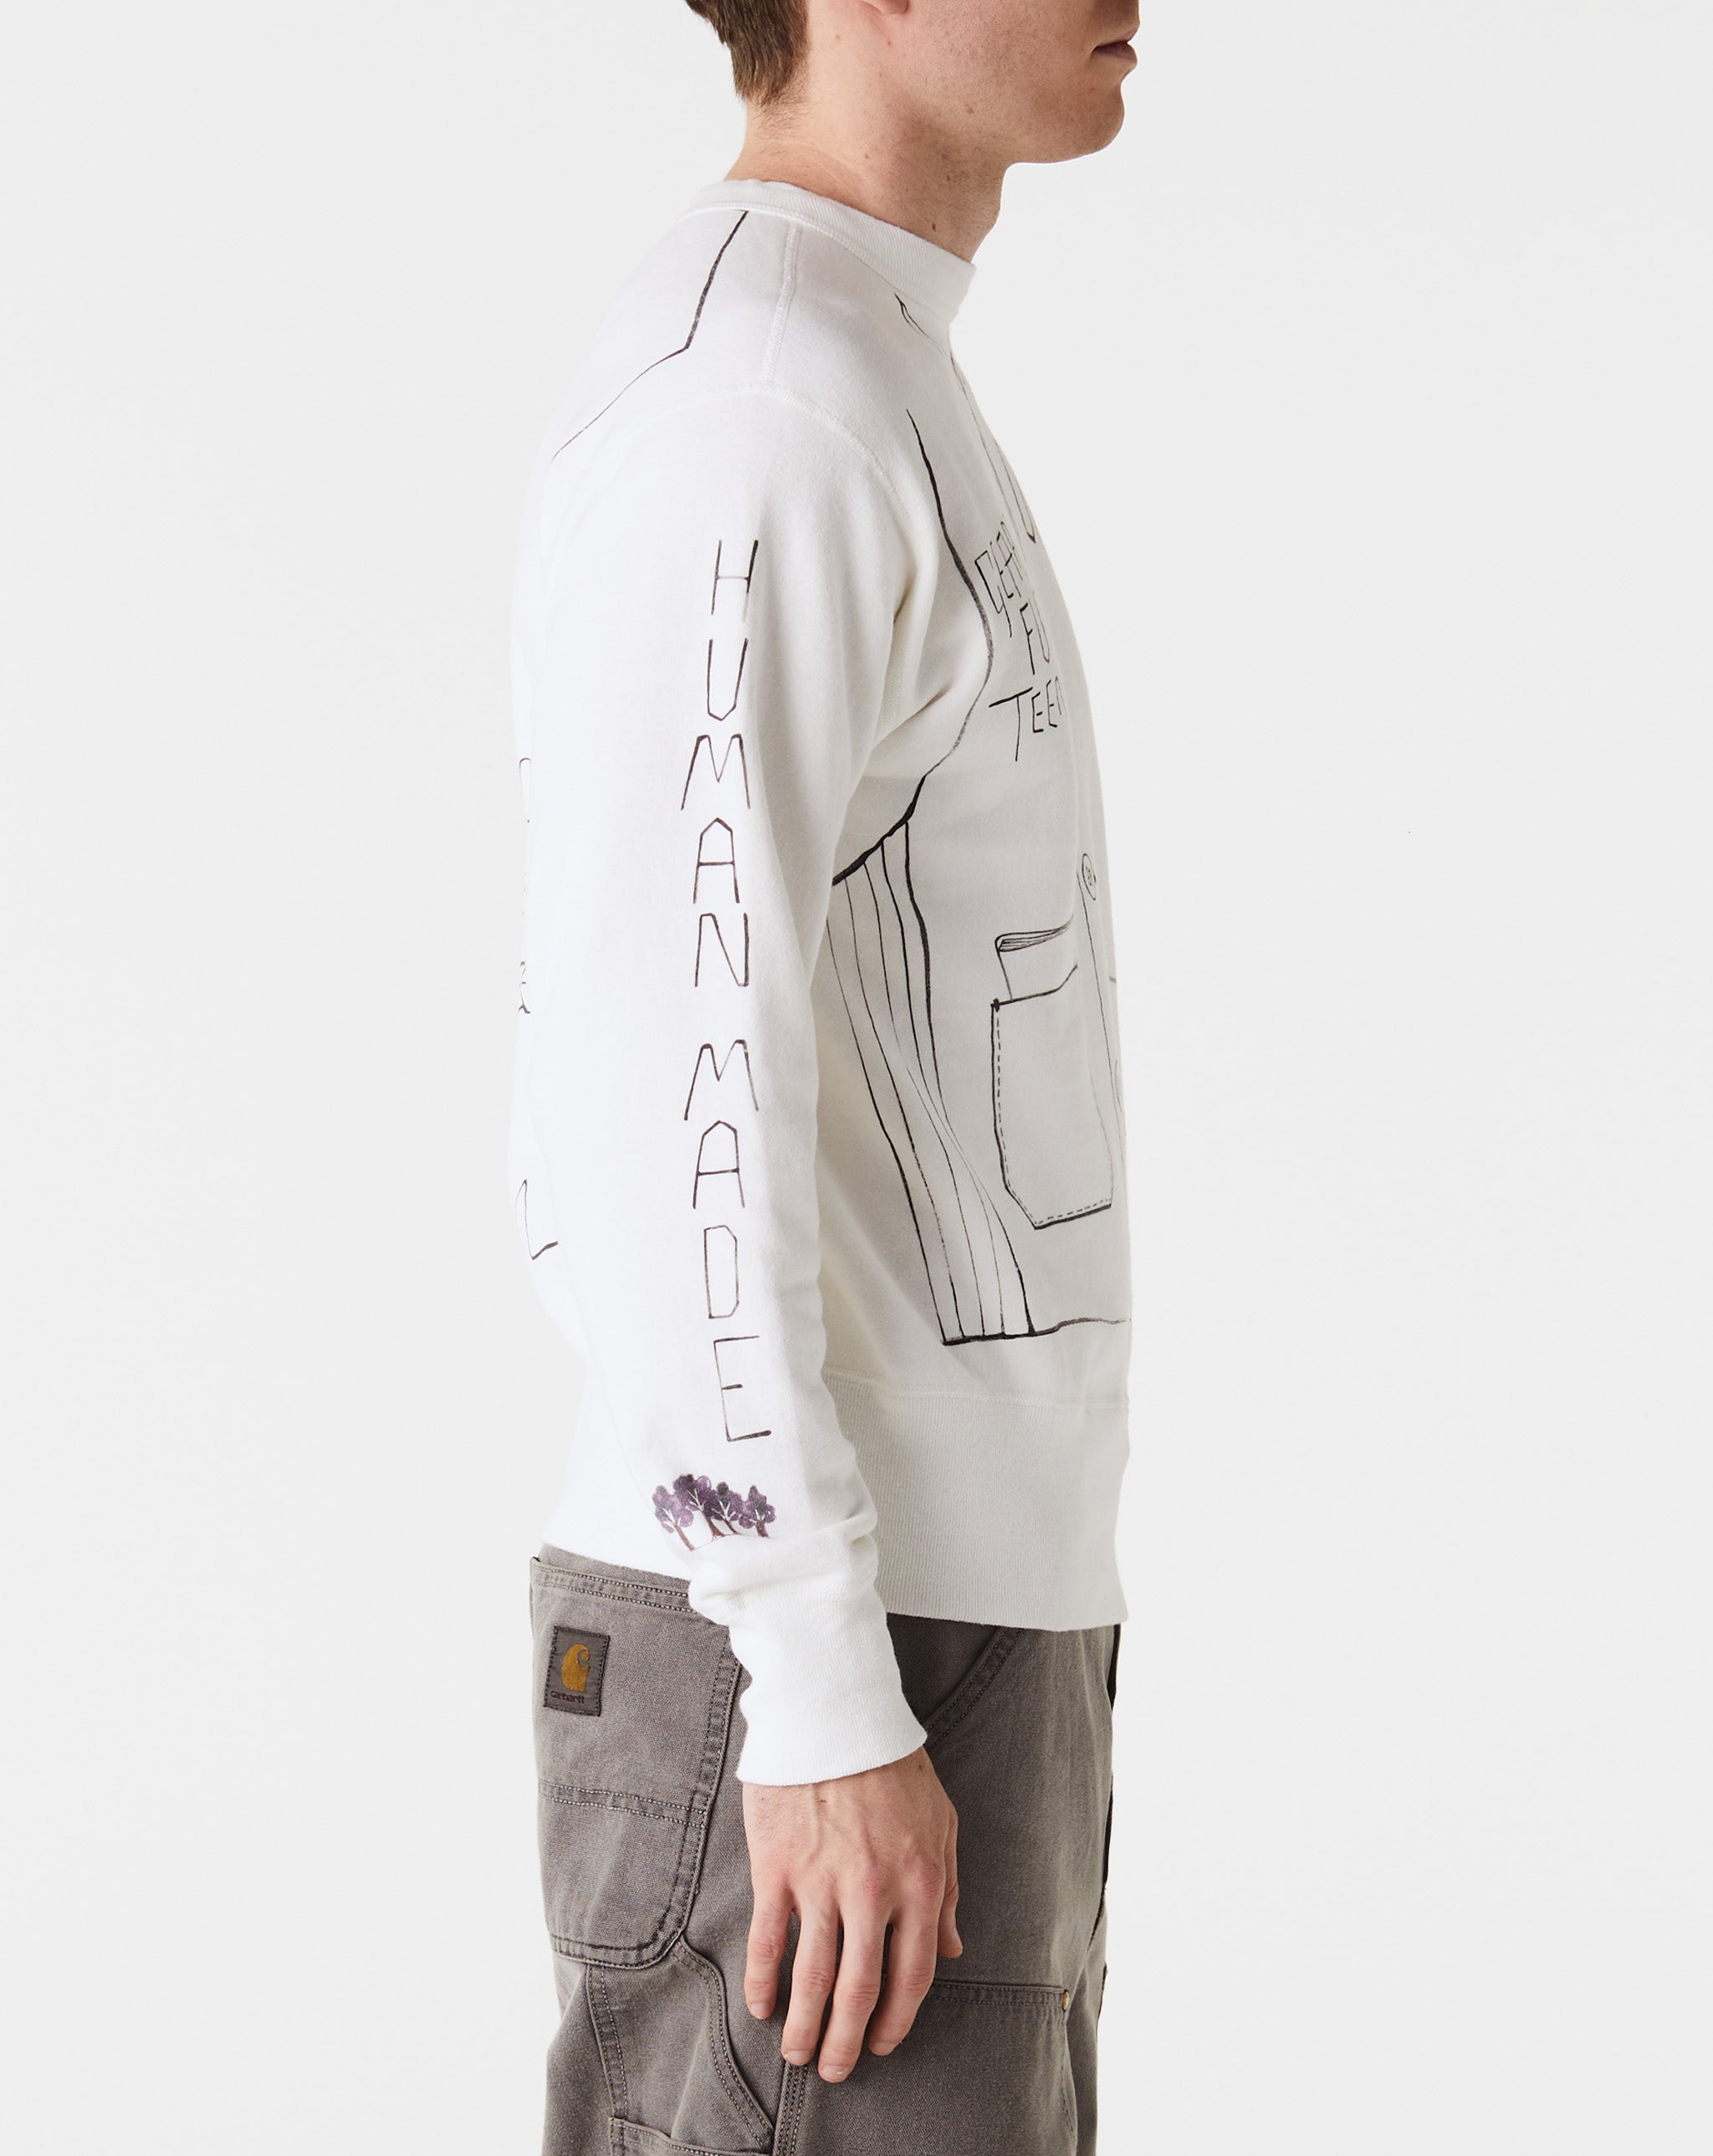 Human Made Graphic Sweatshirt  - Cheap Urlfreeze Jordan outlet